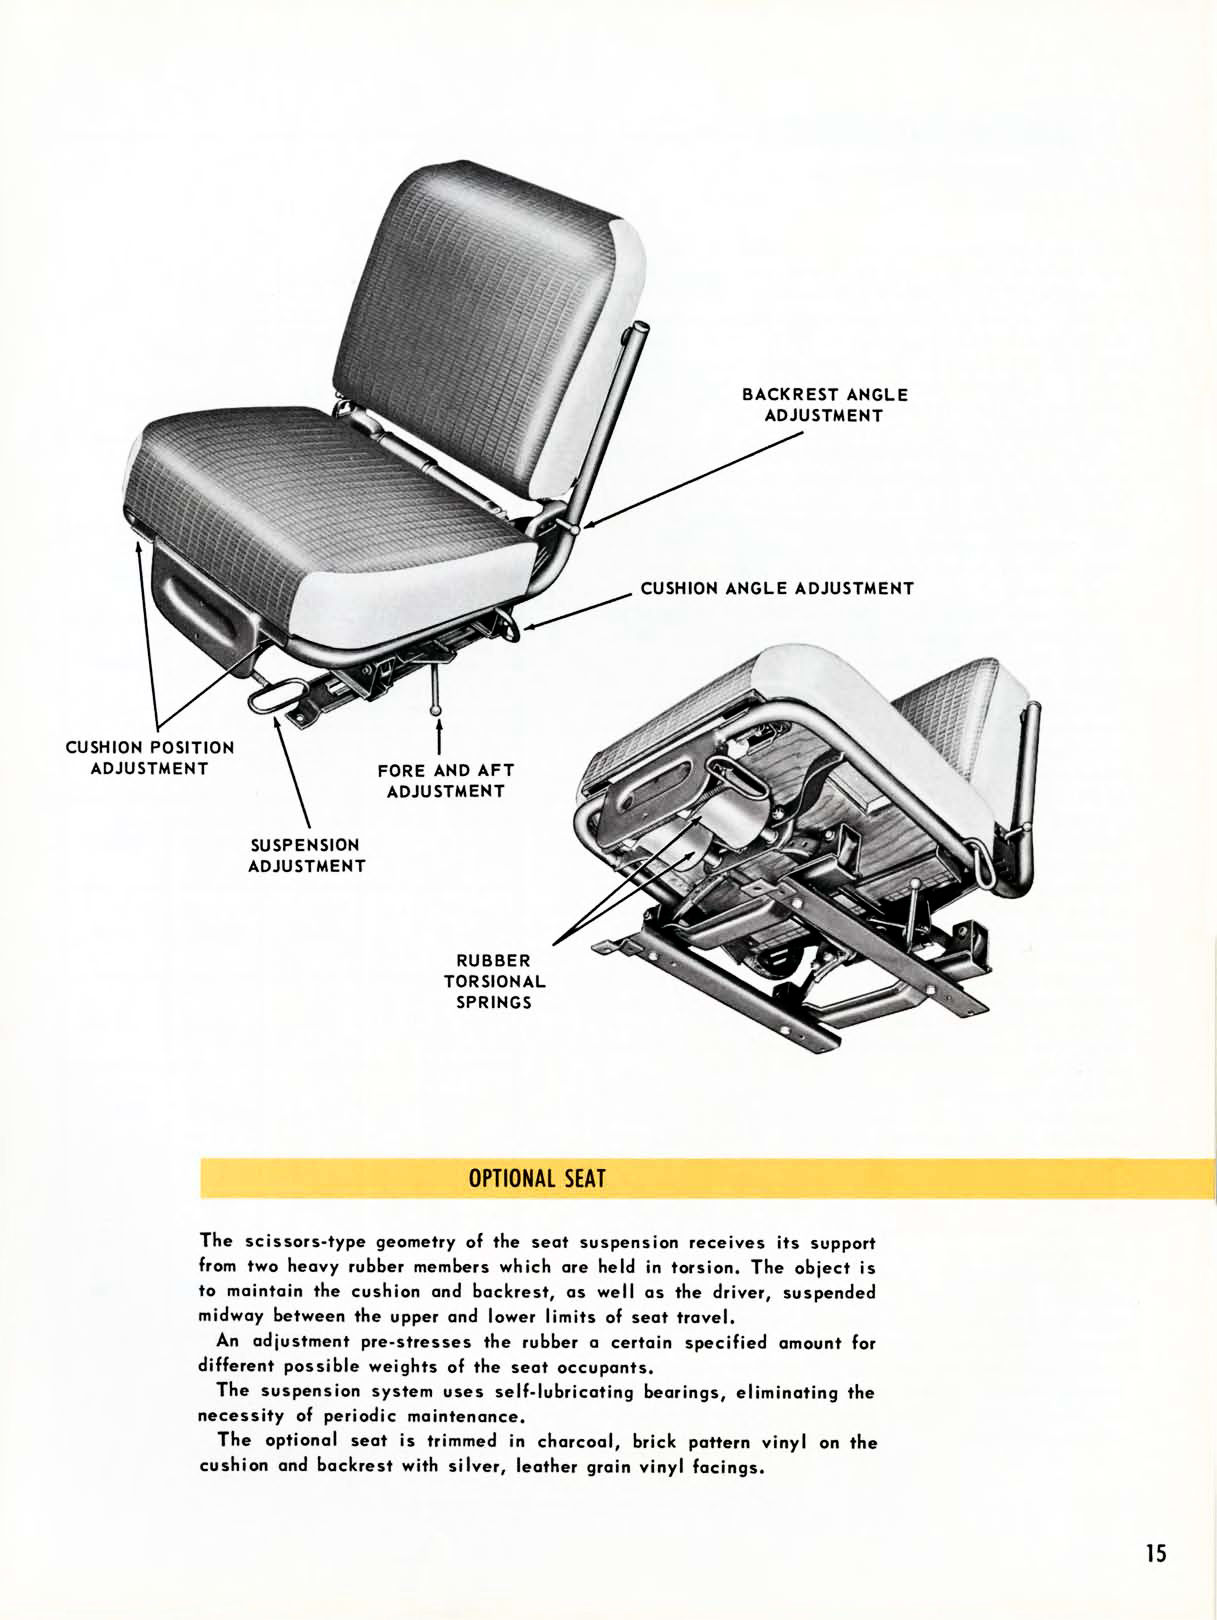 1958_Chevrolet_Truck_Engineering_Features-15